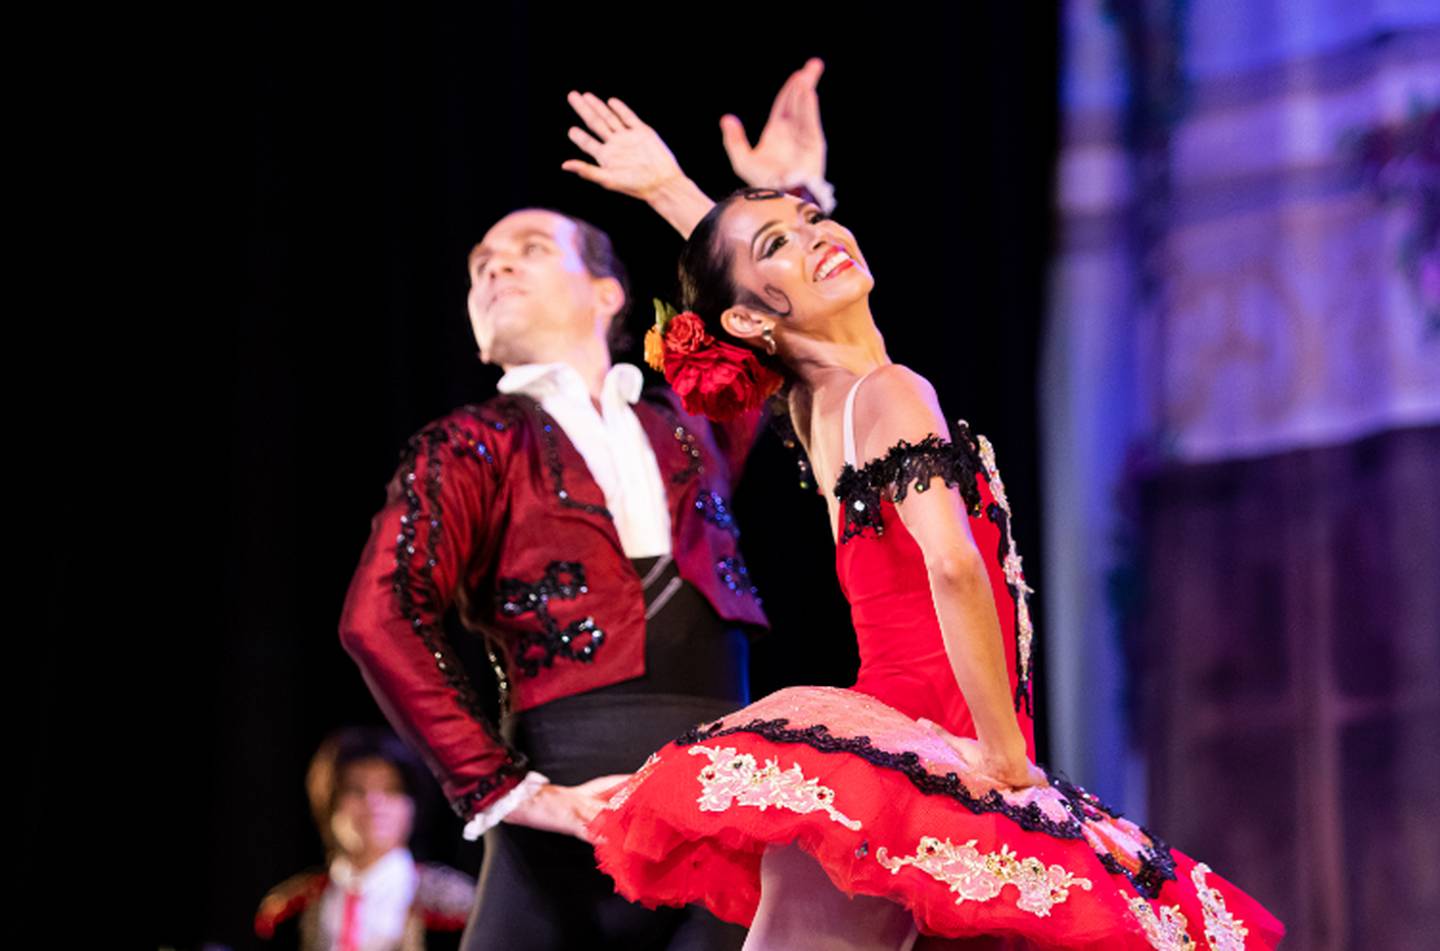 El Teatro Nacional presenta el Ballet “Don Quijote” los días 7 y 8 de octubre.